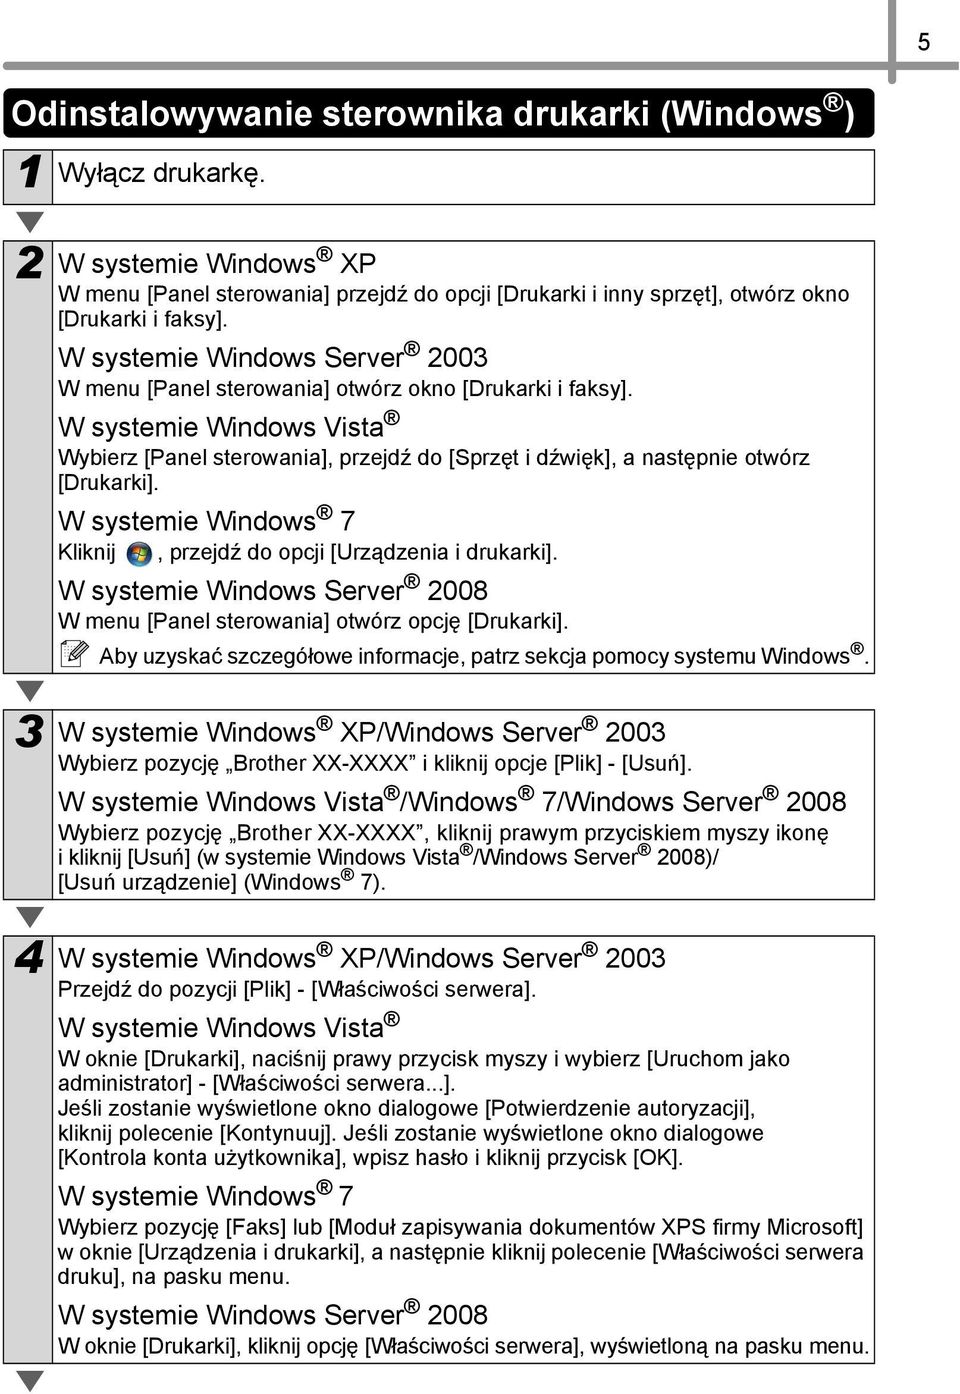 W systemie Windows Vista Wybierz [Panel sterowania], przejdź do [Sprzęt i dźwięk], a następnie otwórz [Drukarki]. W systemie Windows 7 Kliknij, przejdź do opcji [Urządzenia i drukarki].